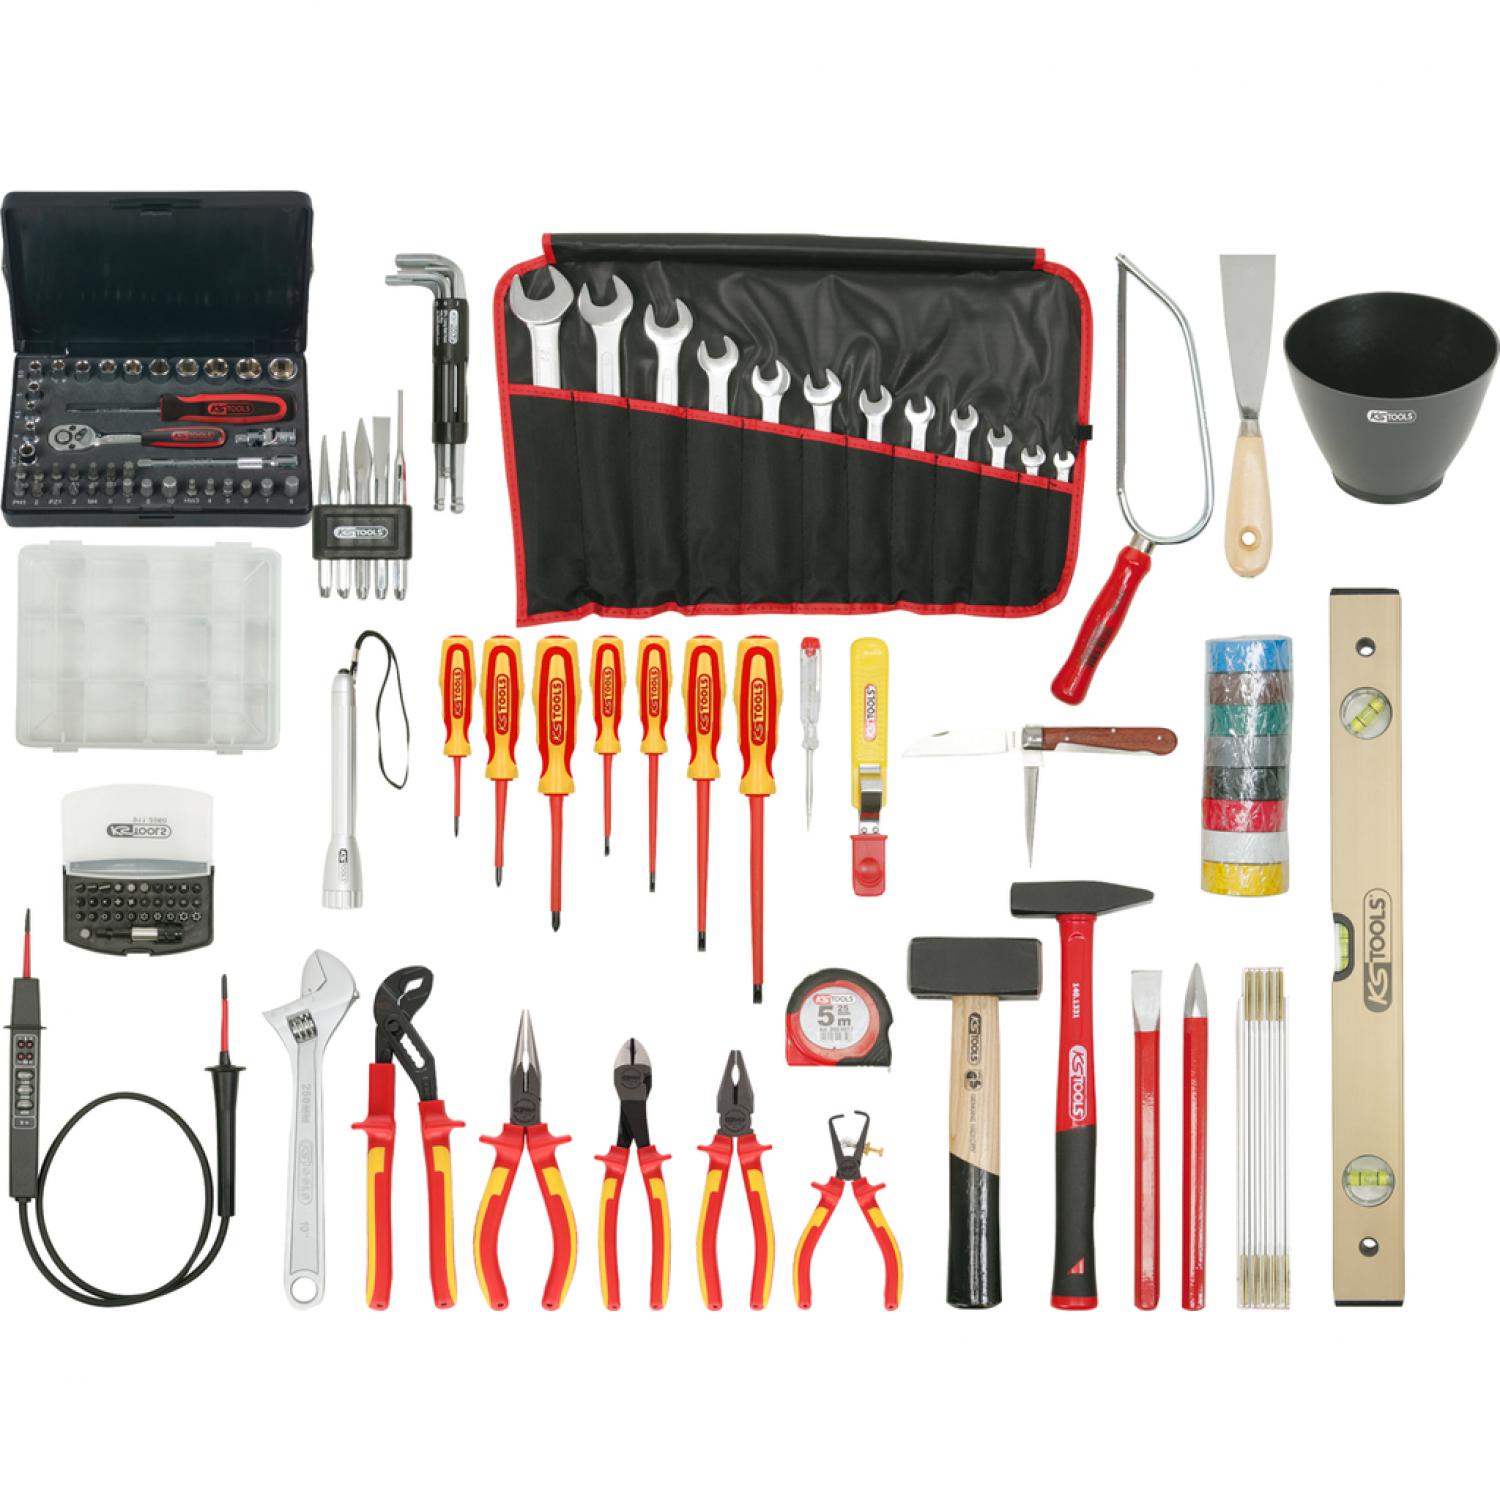 Комплект инструментов для электриков Premium в нейлоновой сумке, 132 шт